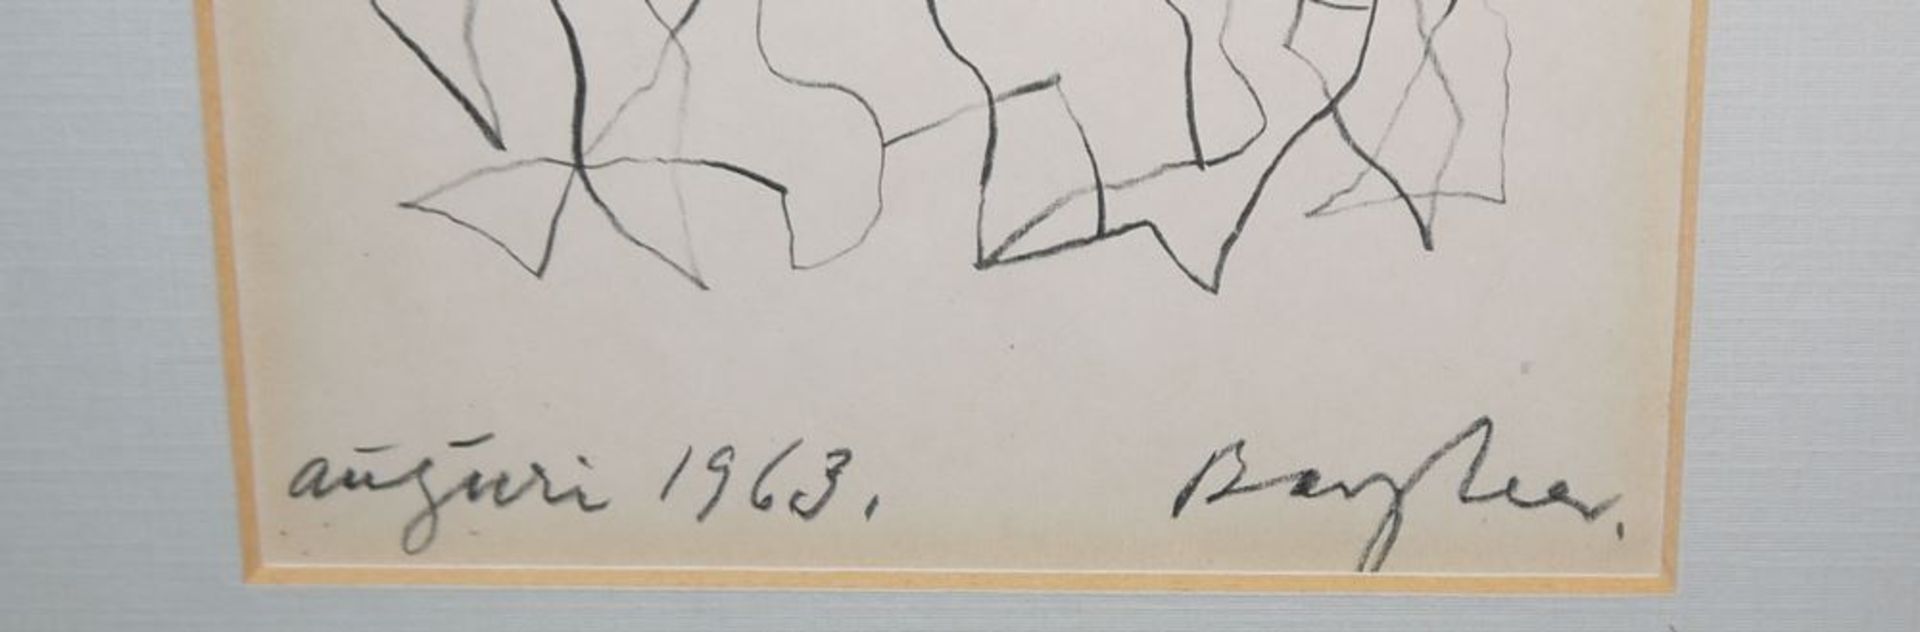 Eduard Bargheer, "Auguri 1963", signierte Zeichnung von 1962, gerahmt - Image 3 of 3